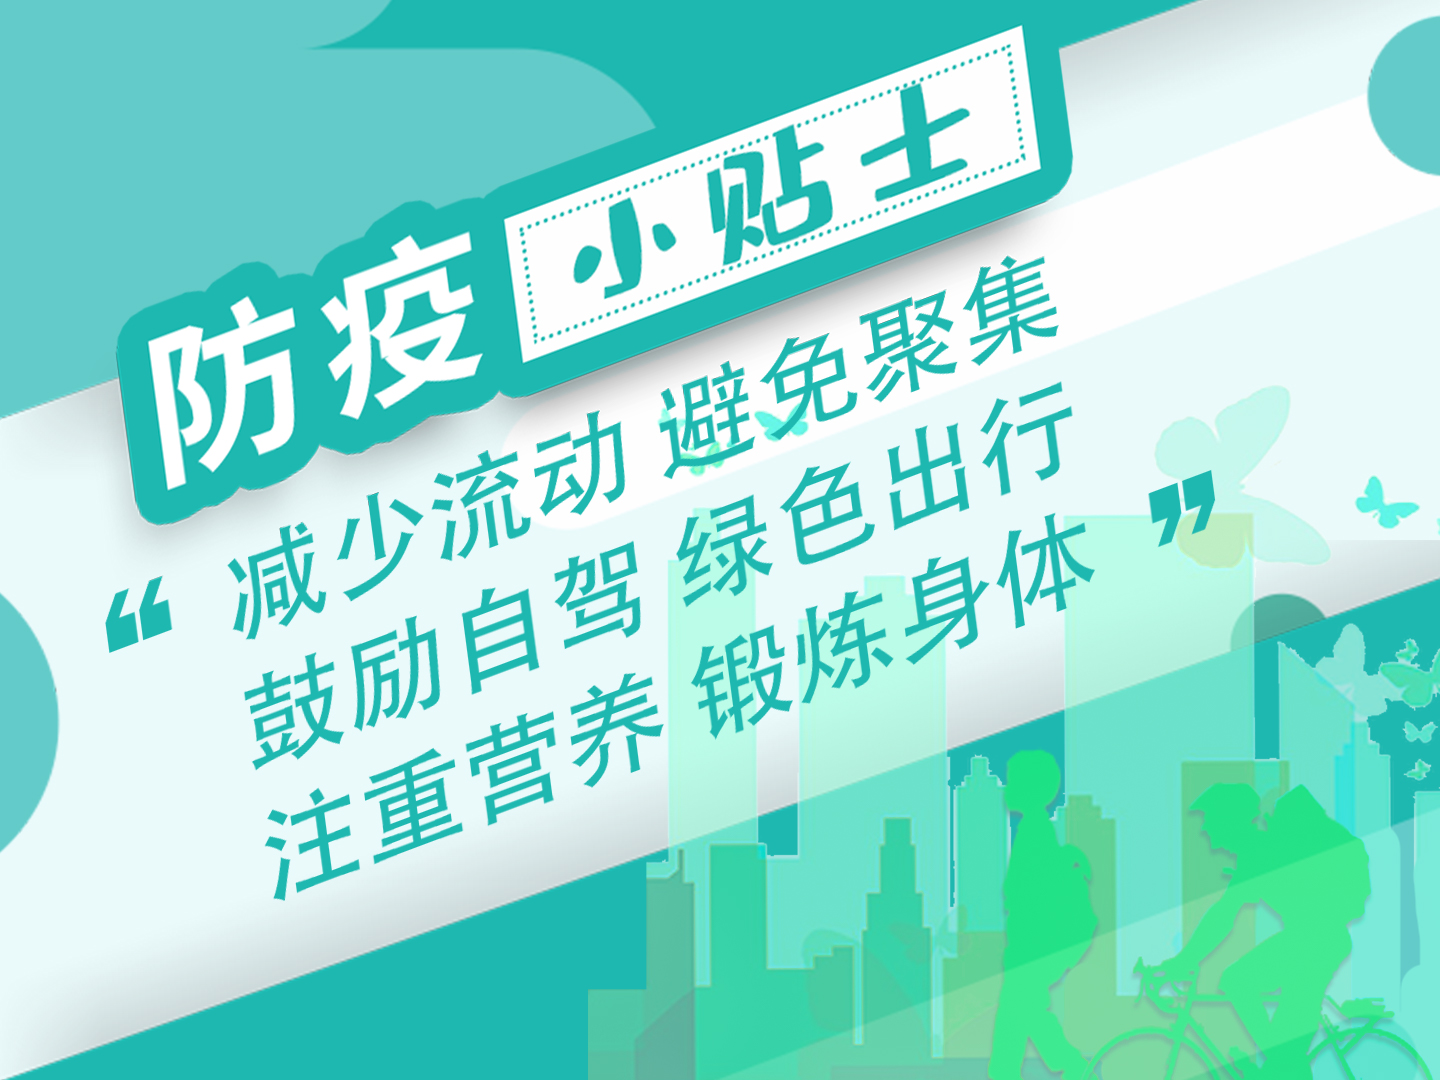 深圳新东方烹饪学校疫情防控绿色出行倡议书